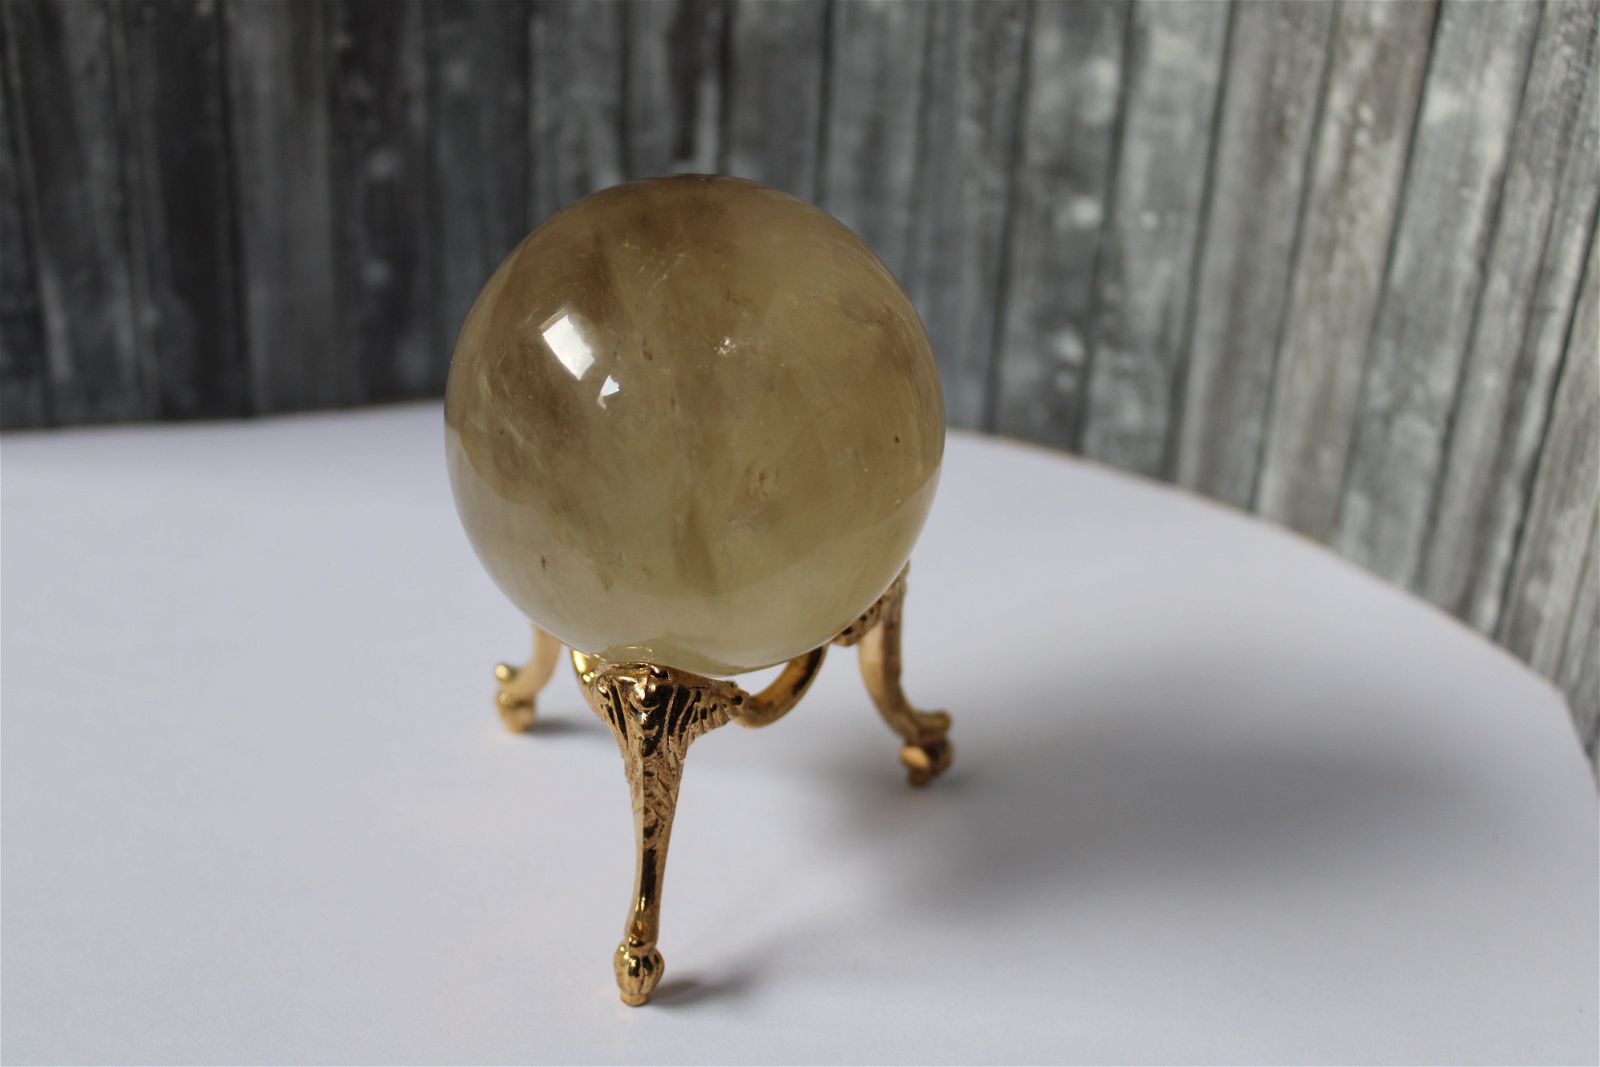 Sphère de citrine 6.5 cm - 295 grammes avec socle doré - Aurore Lune 